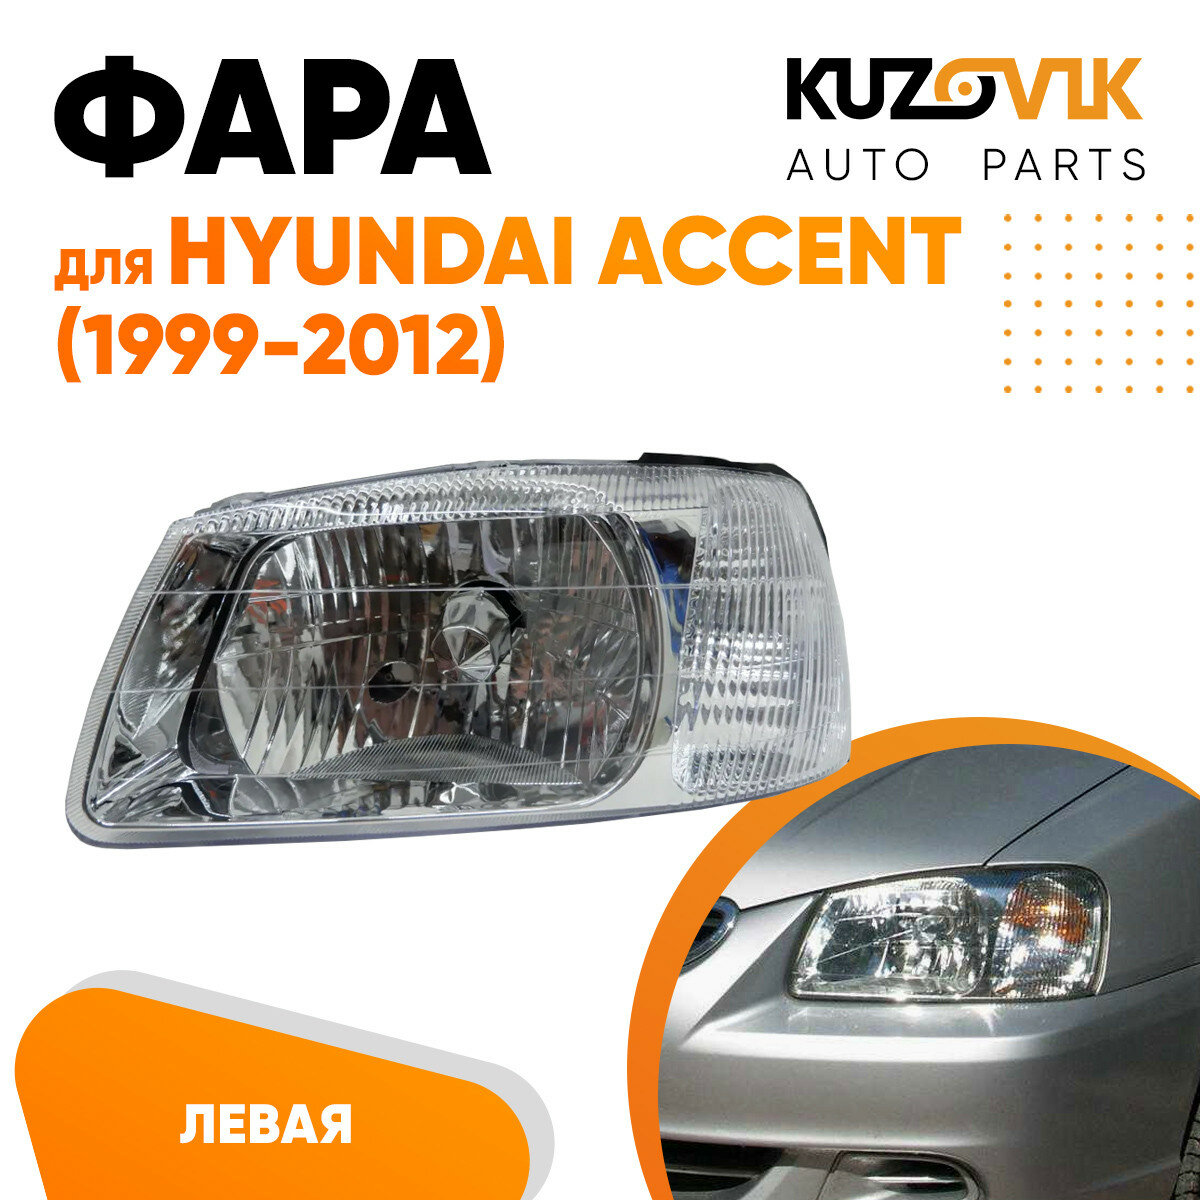 Фара левая Hyundai Accent (1999-2012) с механическим корректором